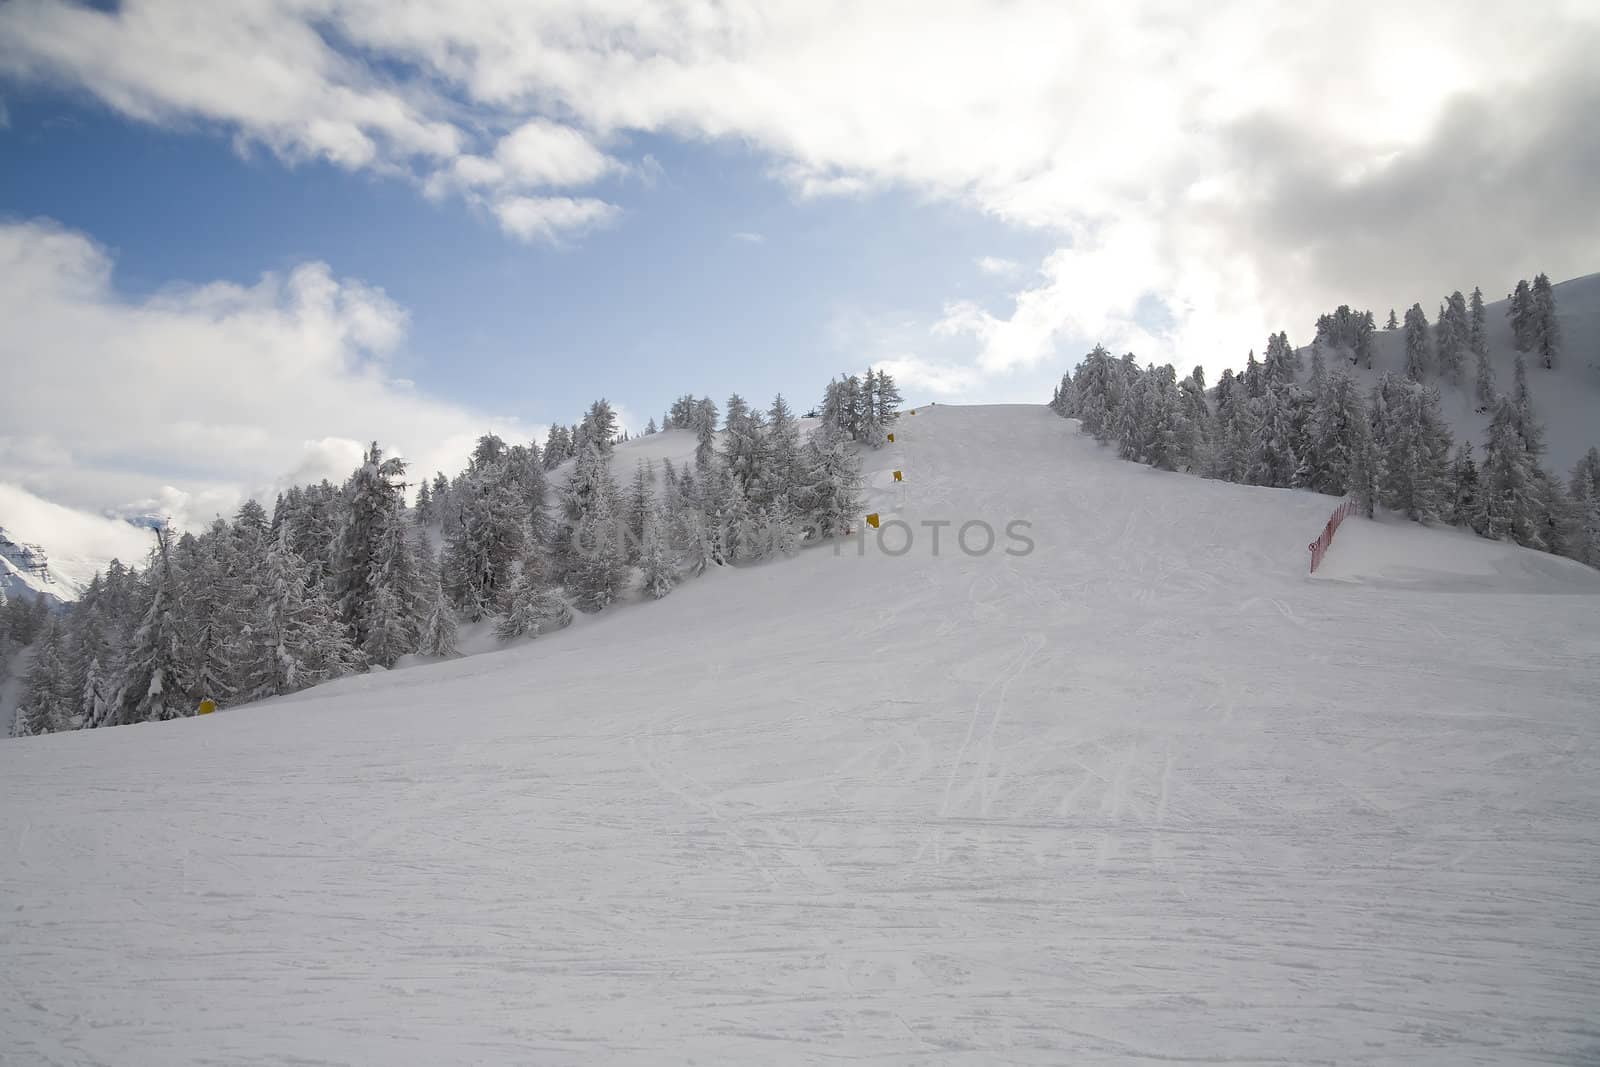 ski slope in italian dolomites by furzyk73